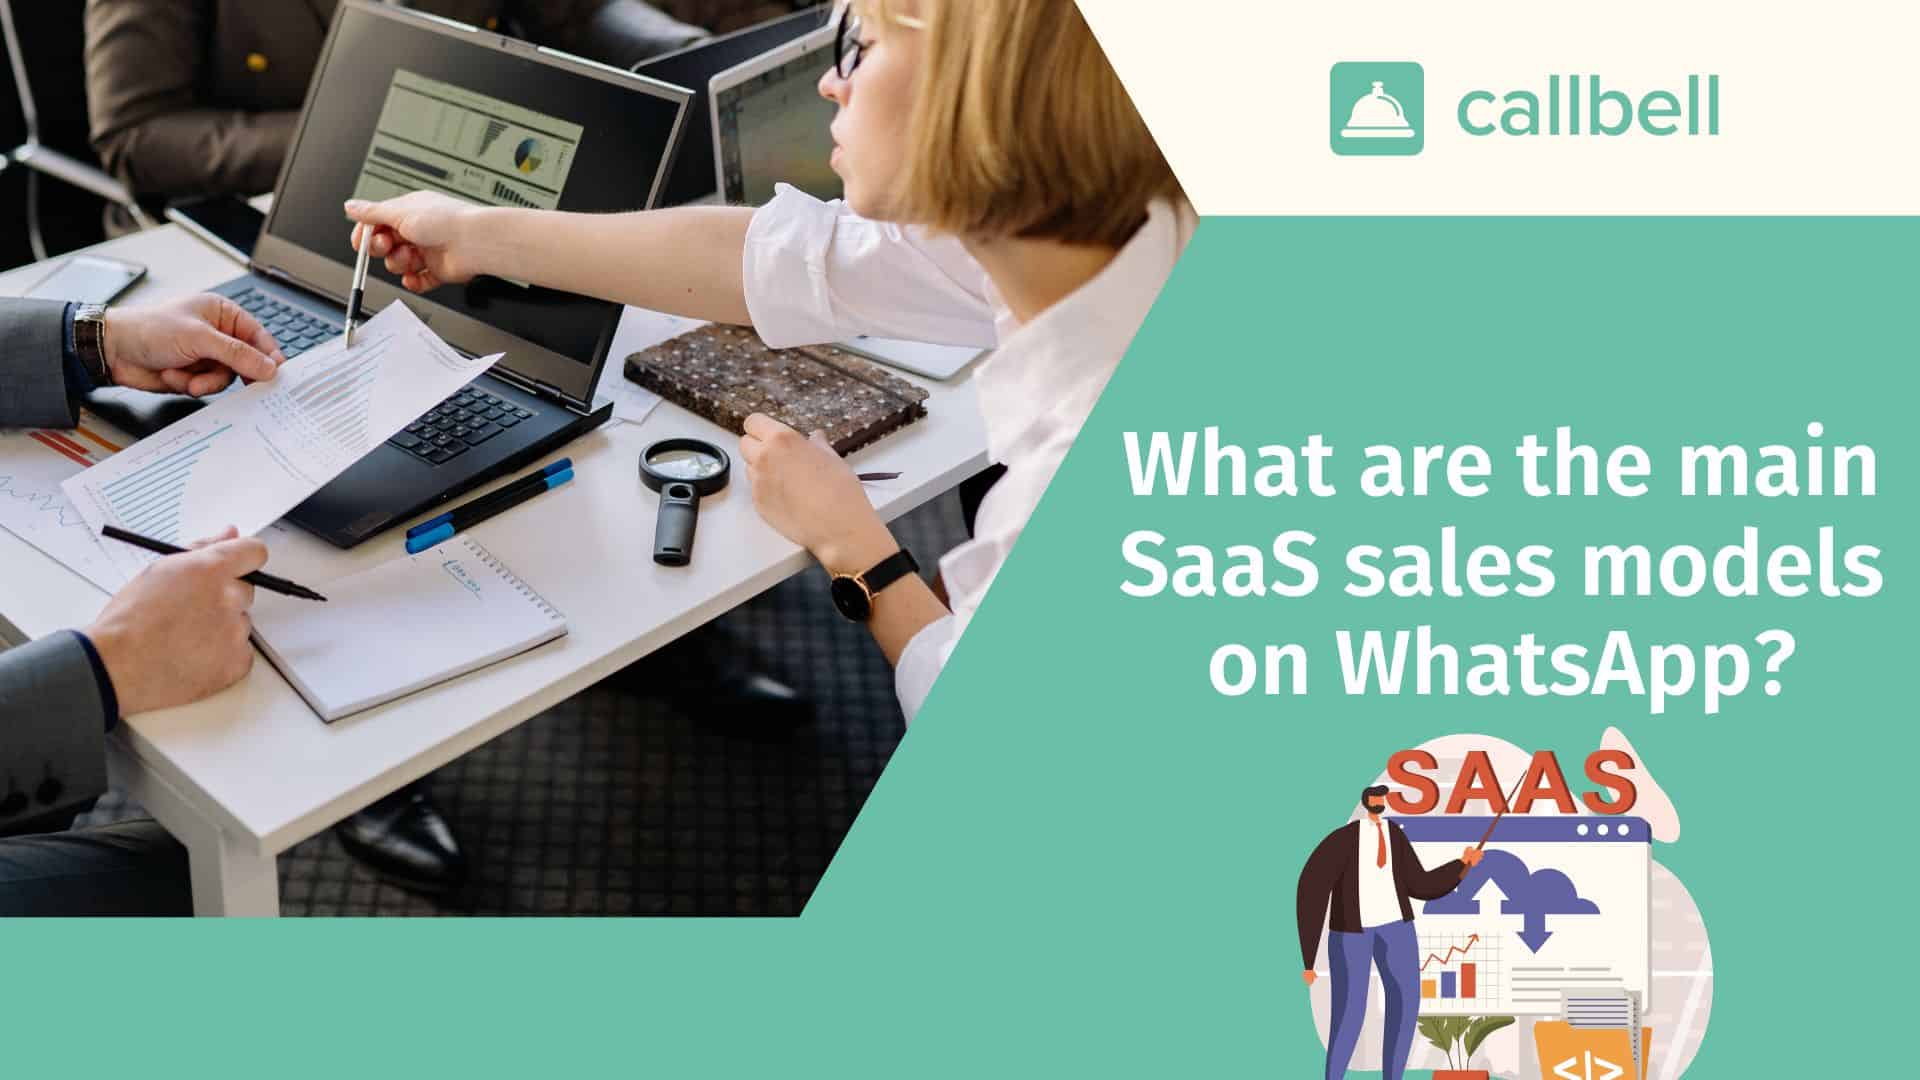 SaaS sales via WhatsApp